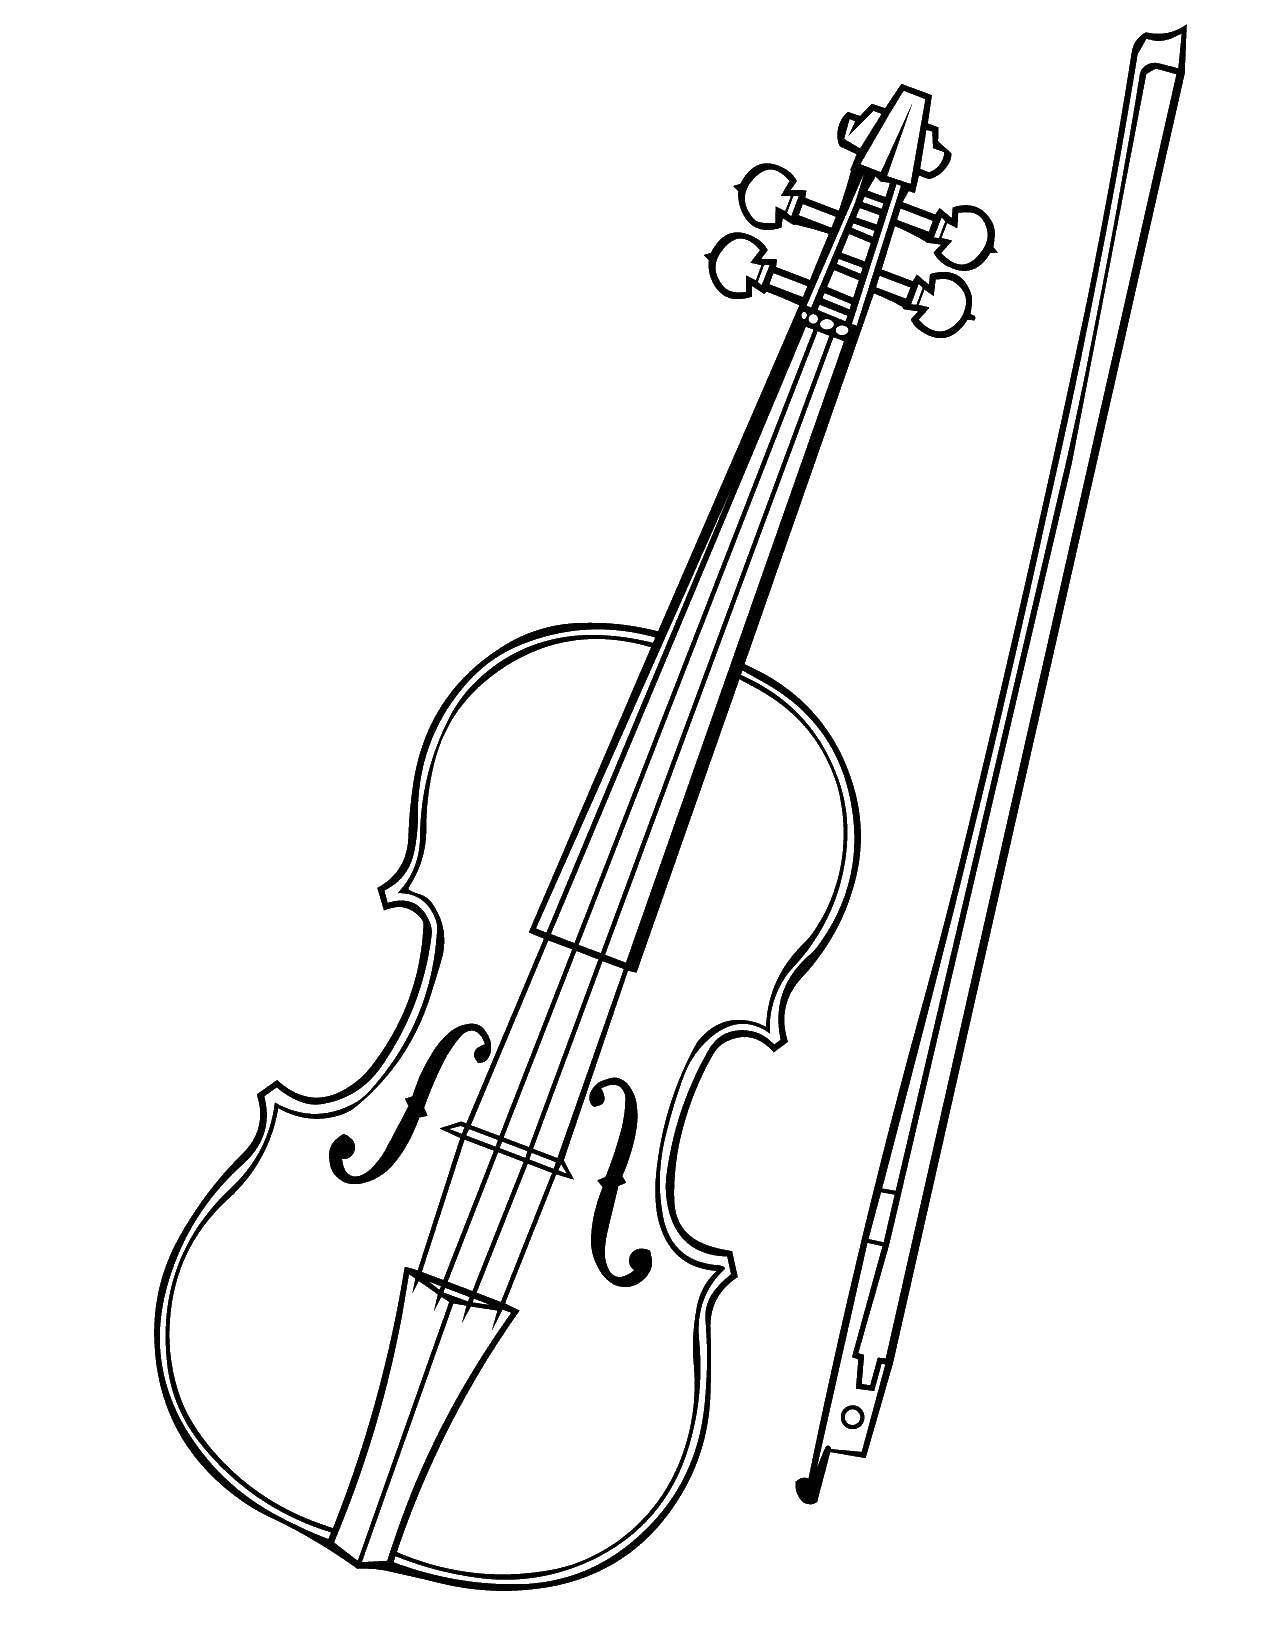 Название: Раскраска Скрипка. Категория: Музыка. Теги: музыка, инструменты, скрипка.